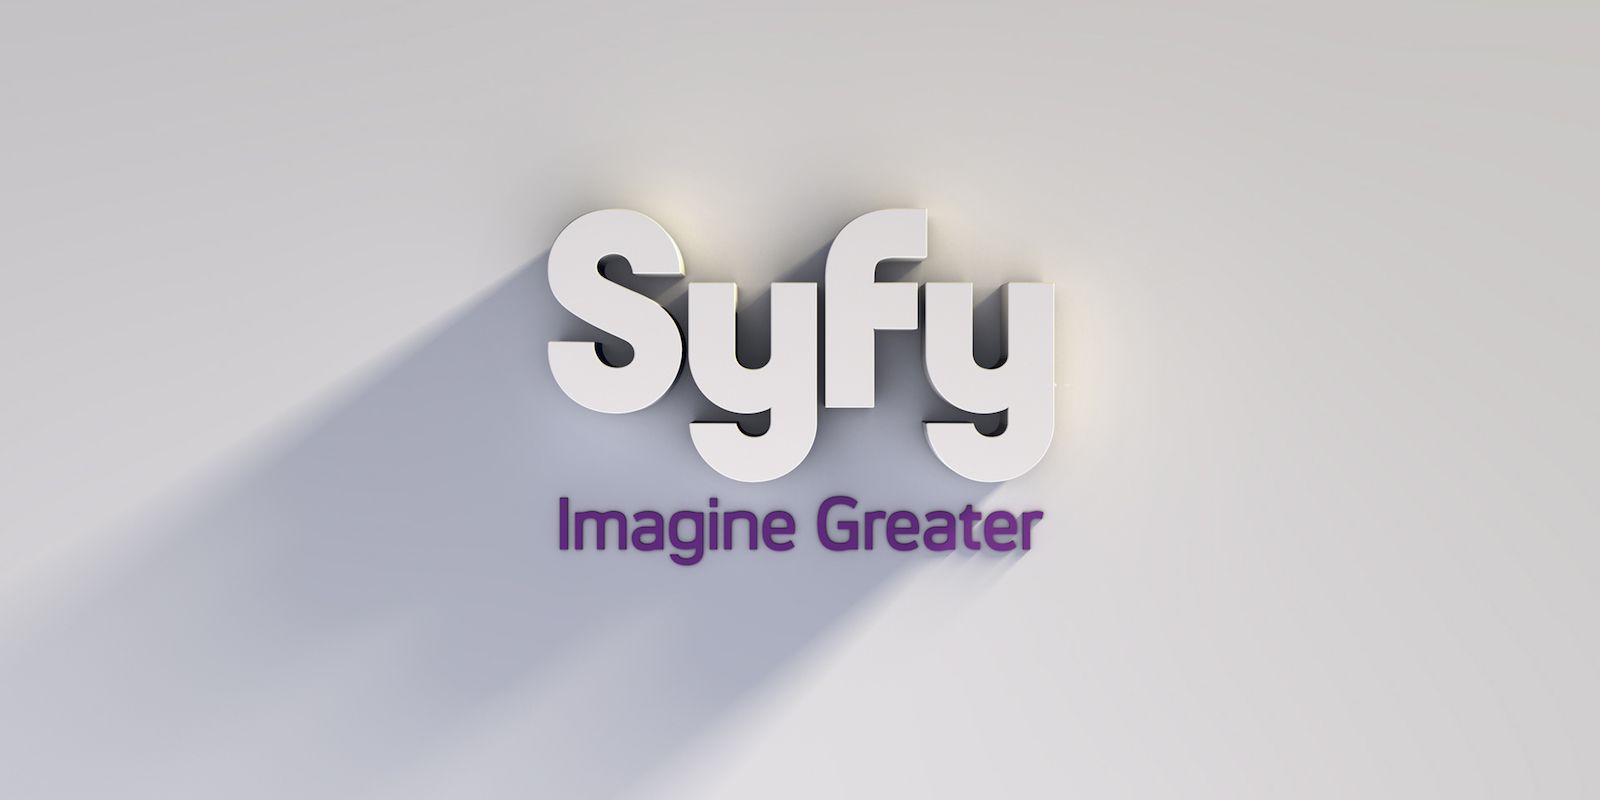 Syfy Network Logo